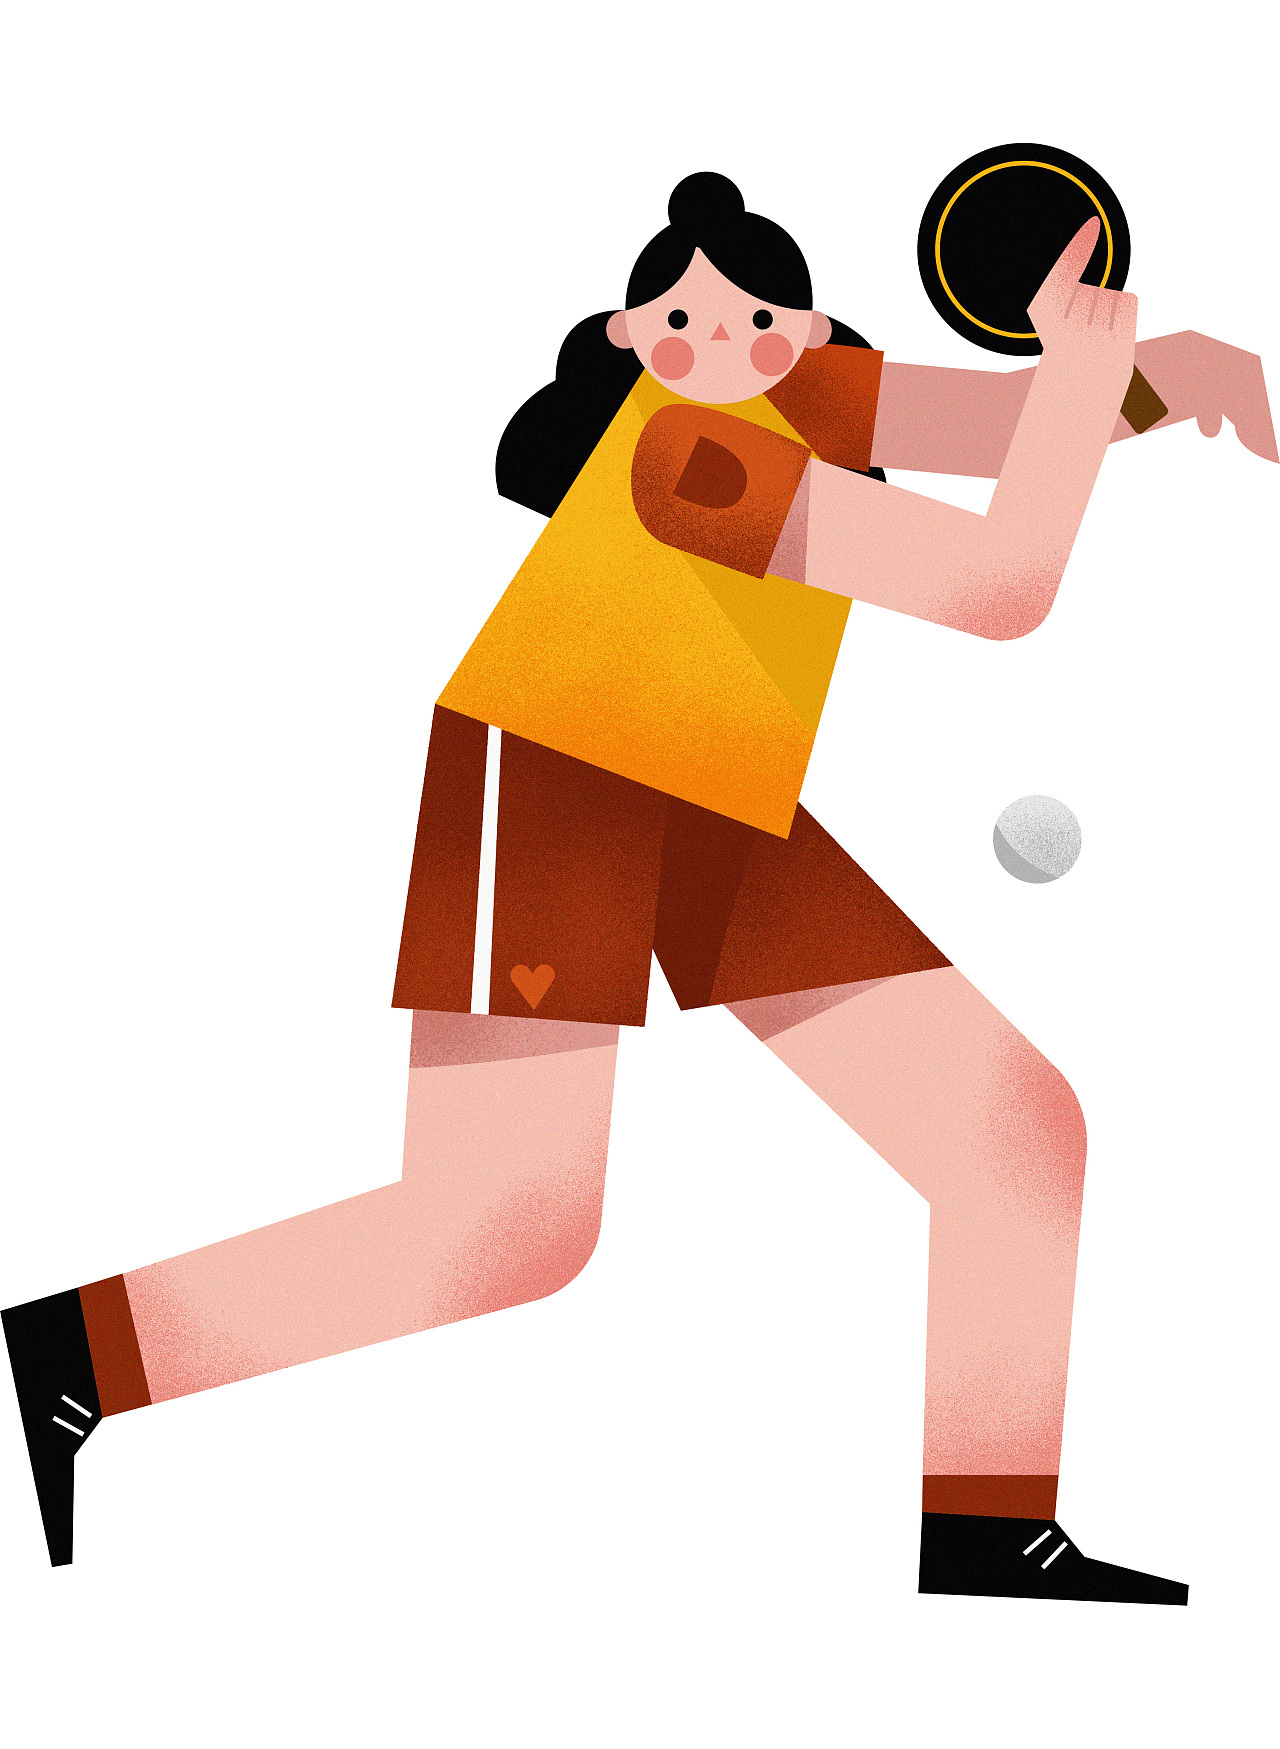 全民健身日跑步运动健康节日男孩操场插画图片-千库网